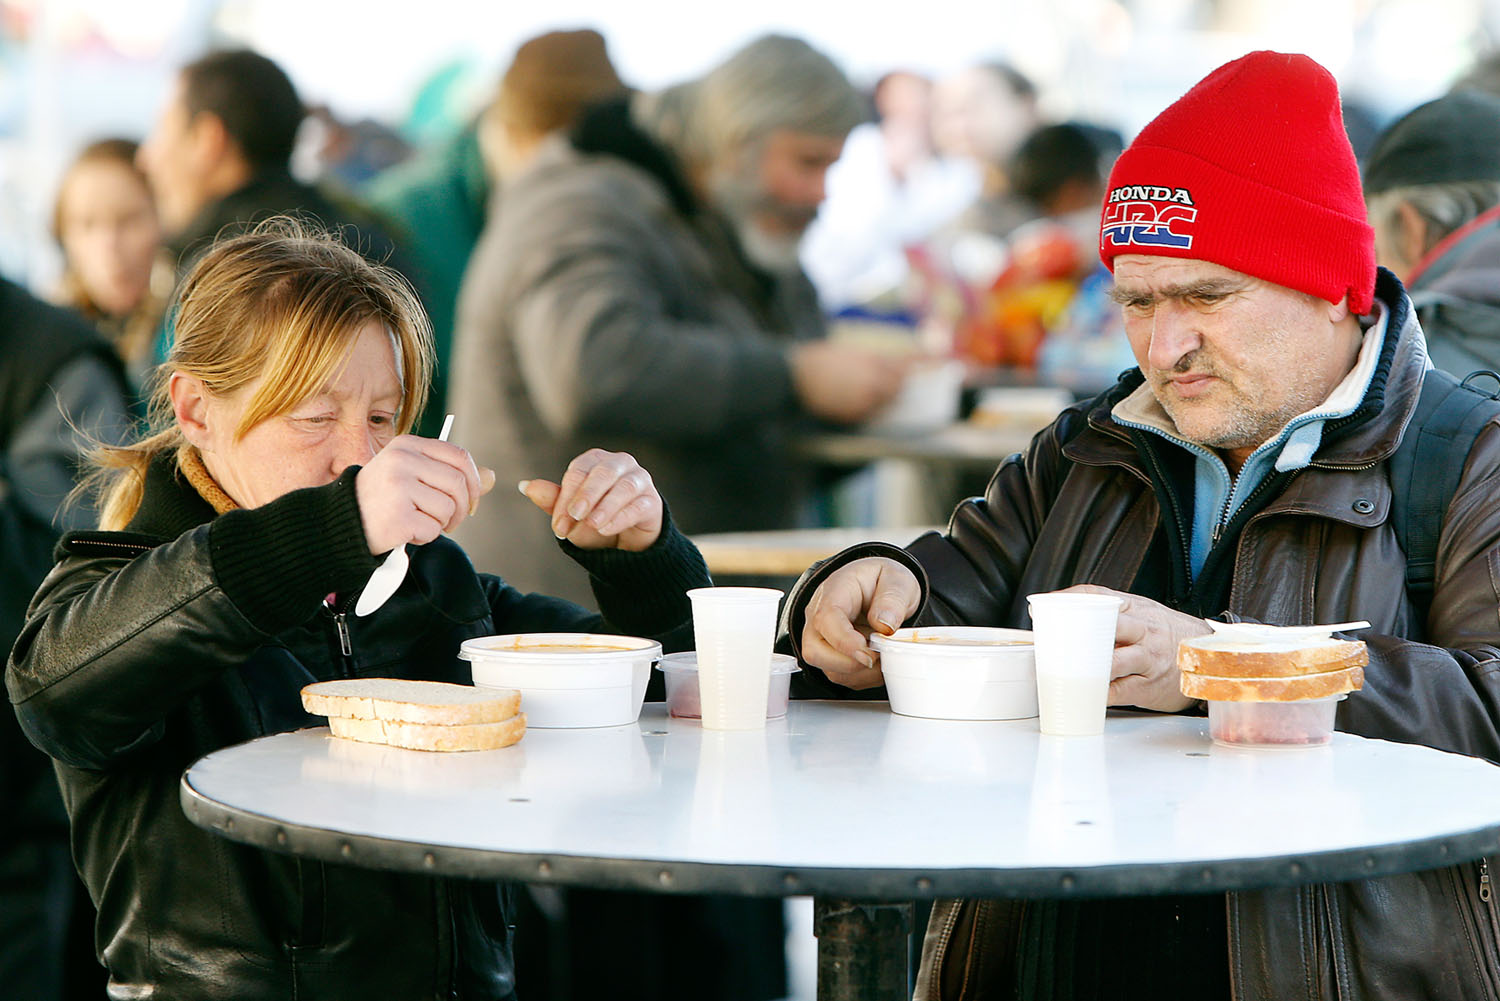 Ételosztás 2014 karácsonyán a Blaha Lujza térnél. Itthon fenyegeti a legtöbb embert a szegénység